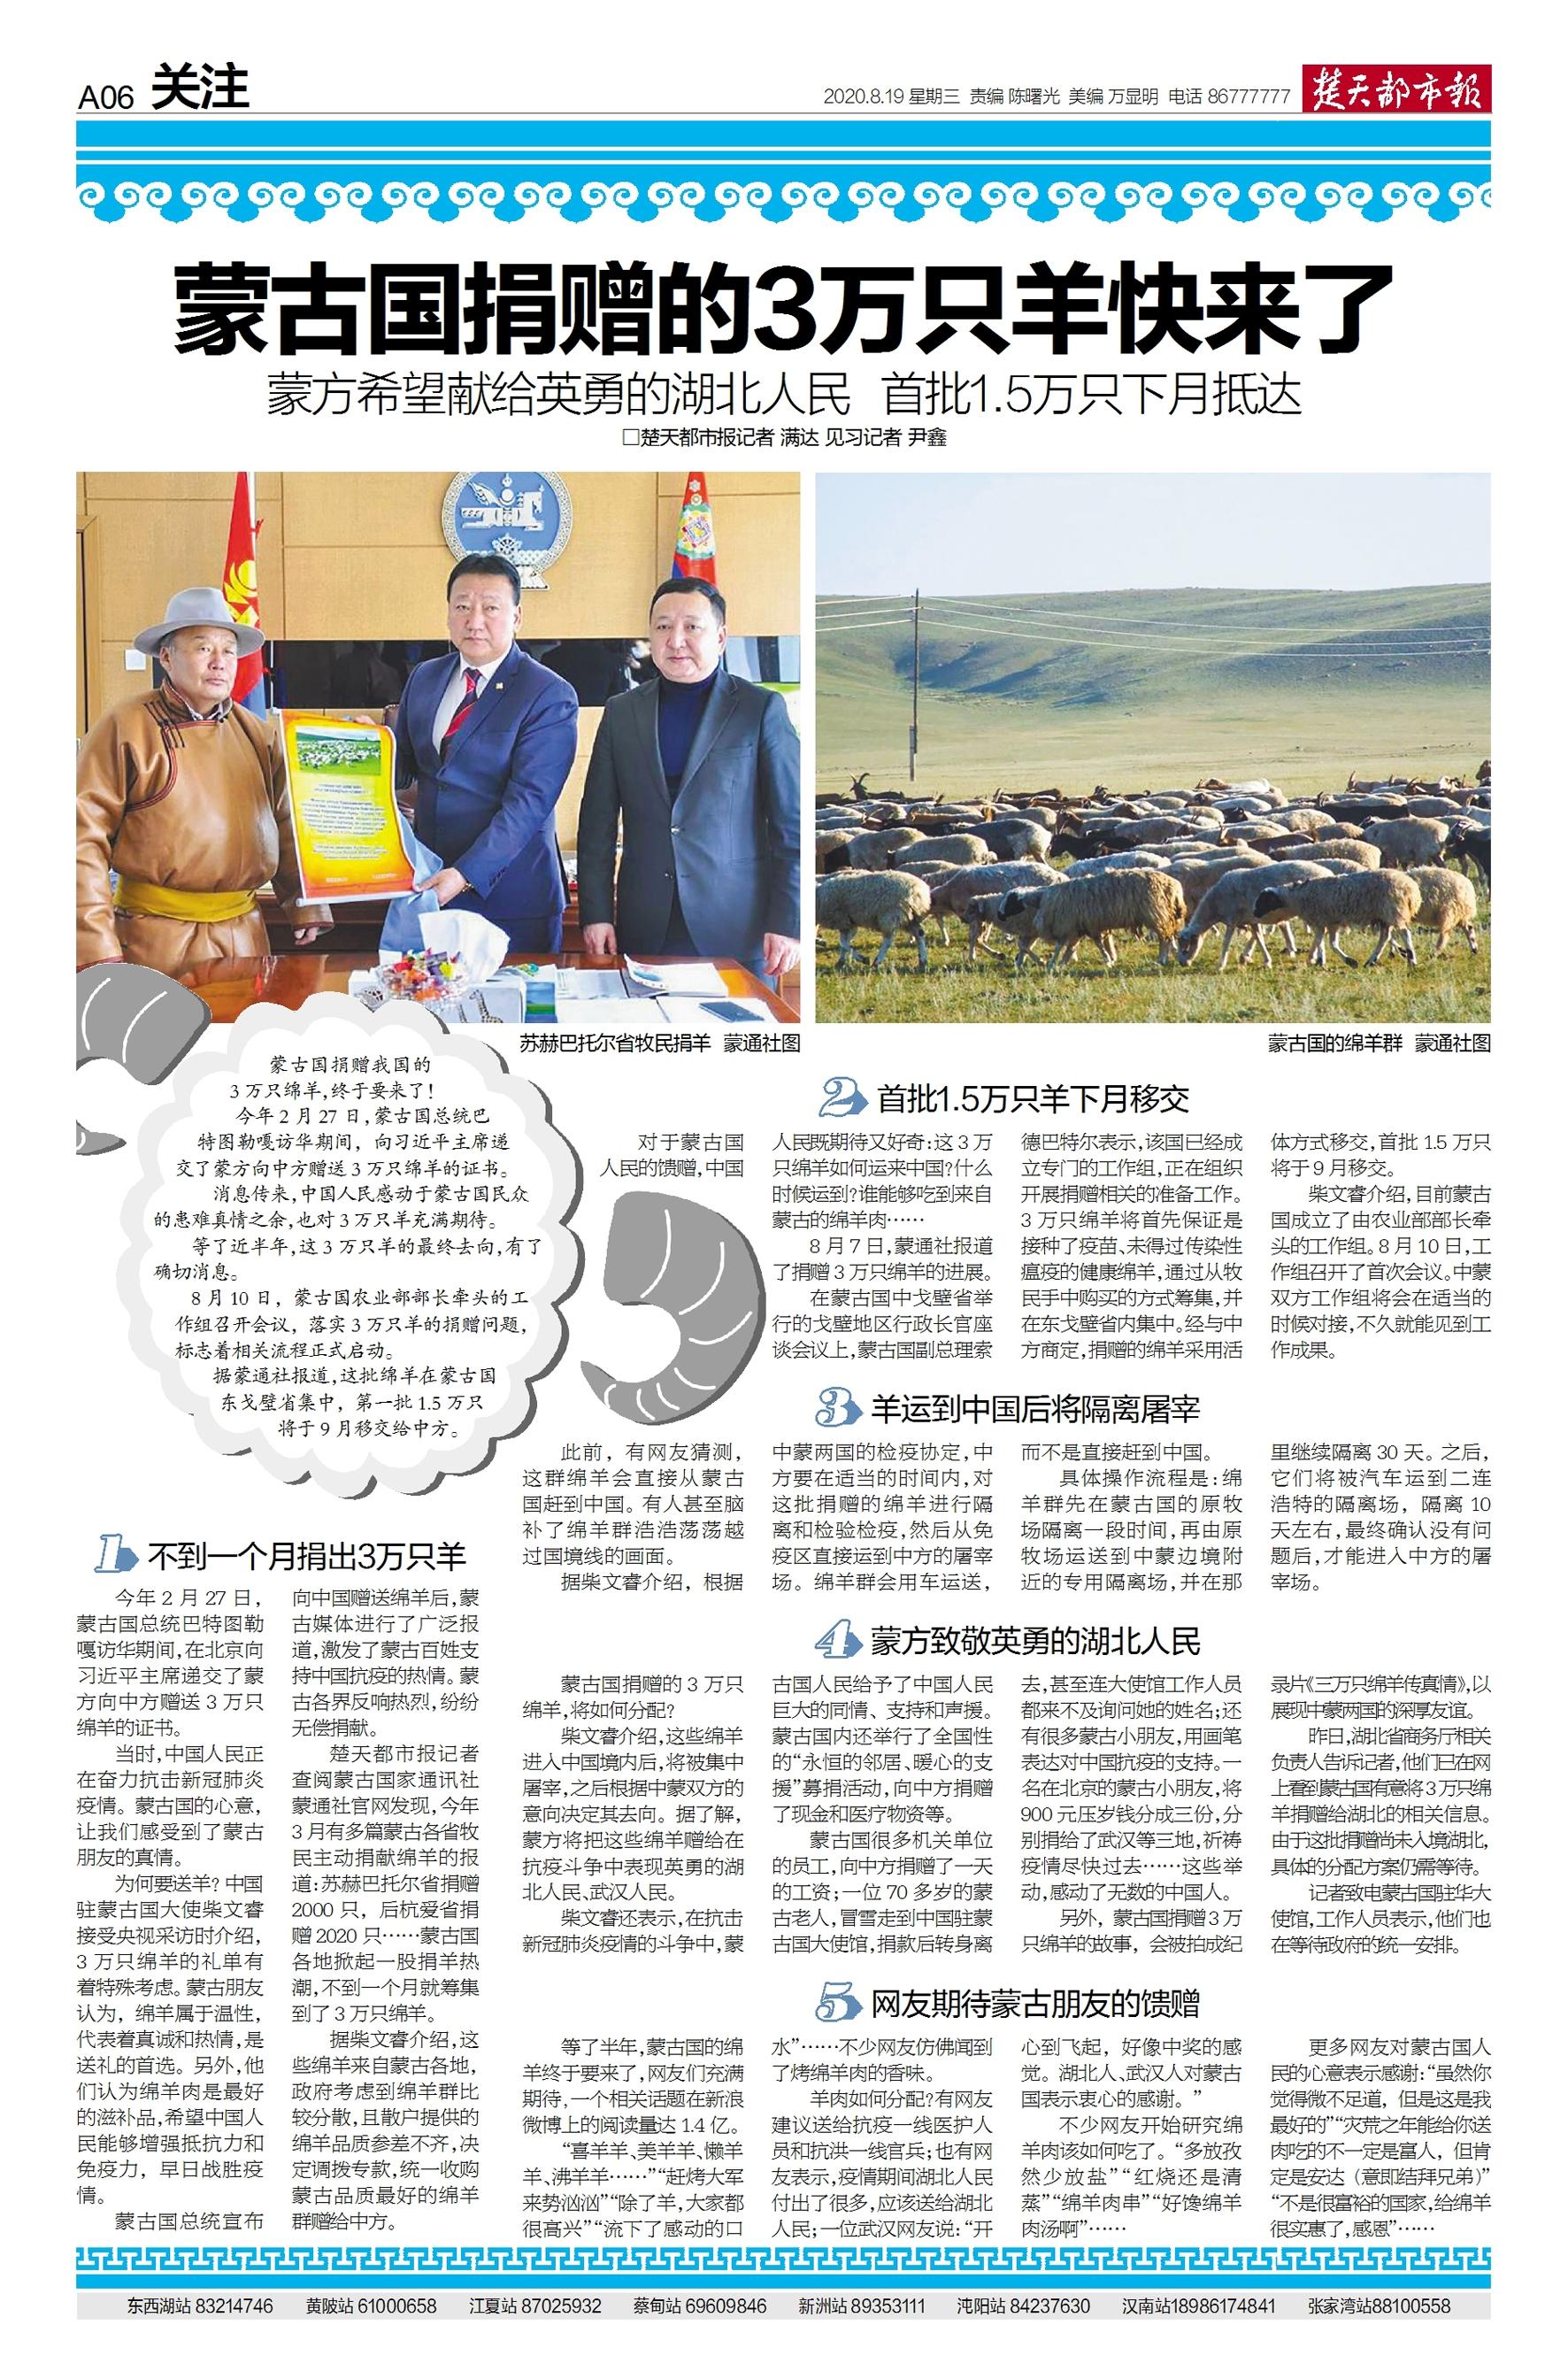 蒙古国捐赠的羊来了！10辆冷链专车昨从武汉启程赴二连浩特，首批1.2万只冻羊周日将运回湖北